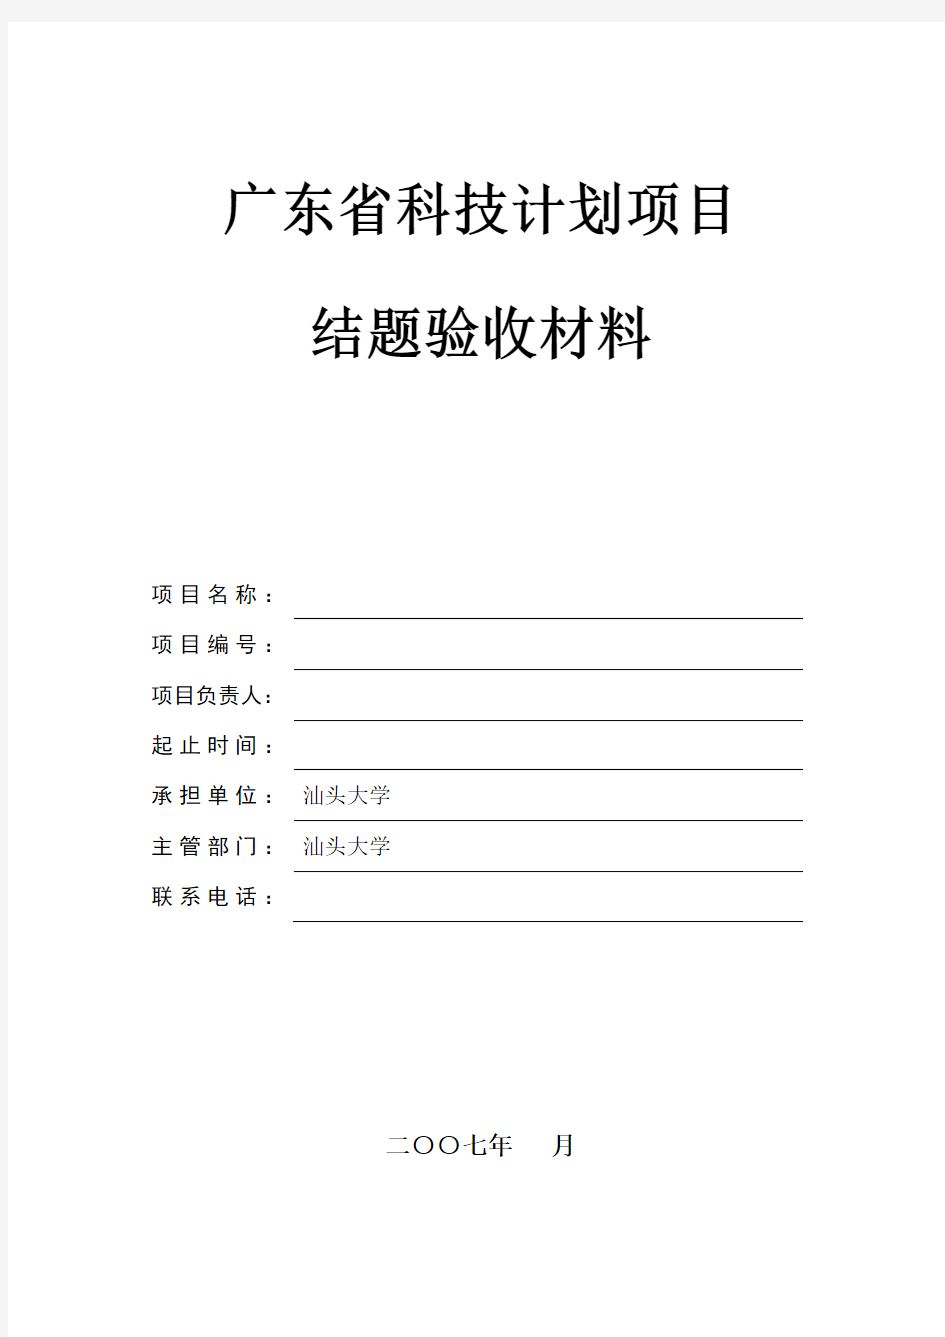 广东省科技计划项目结题验收材料(格式)